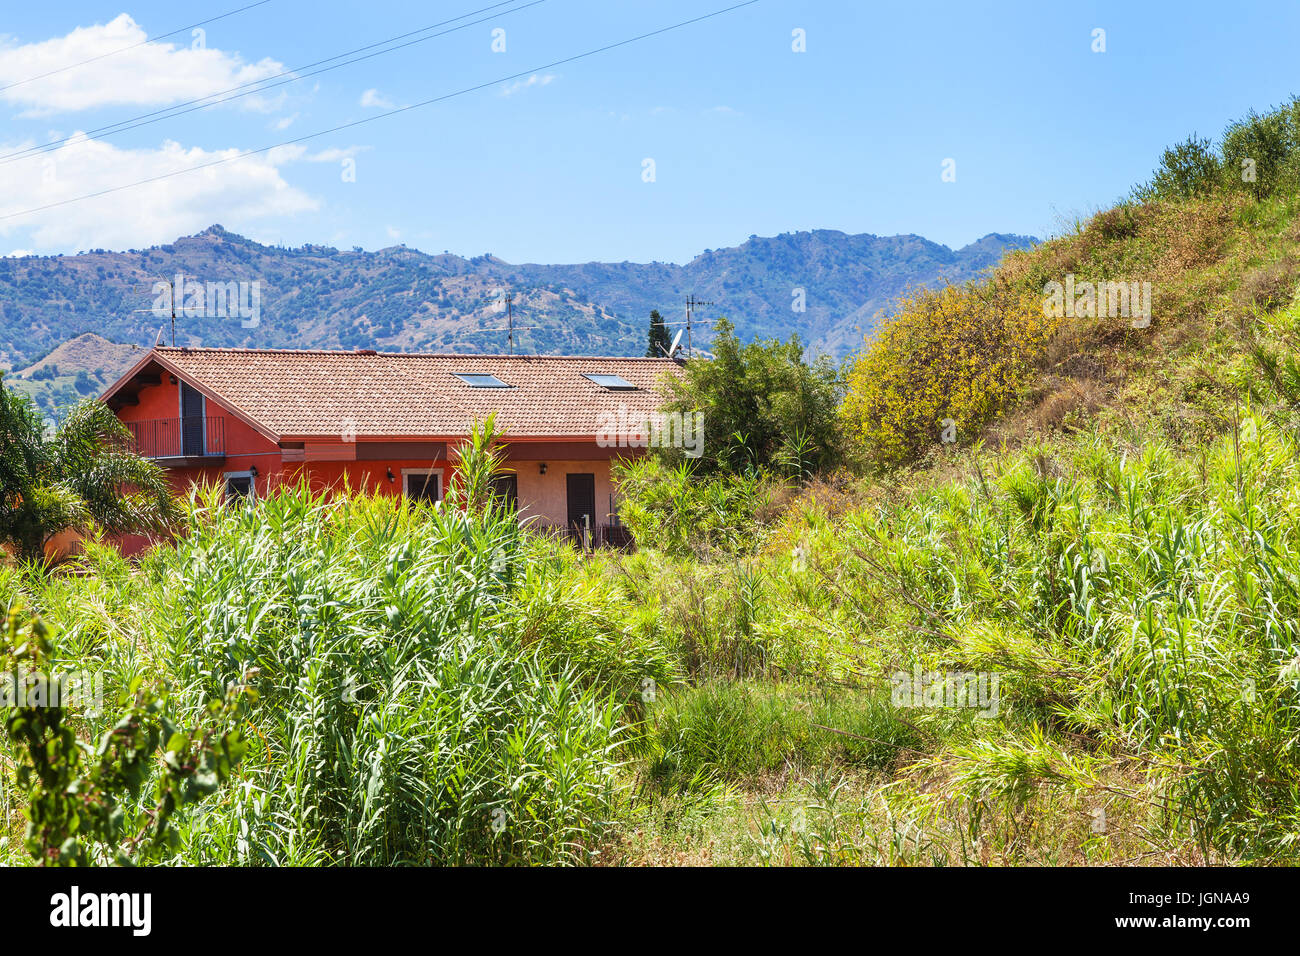 Reisen Sie nach Sizilien, Italien - Schuppen und verwilderten Garten in Giardini Naxos-Stadt im Sommer Stockfoto